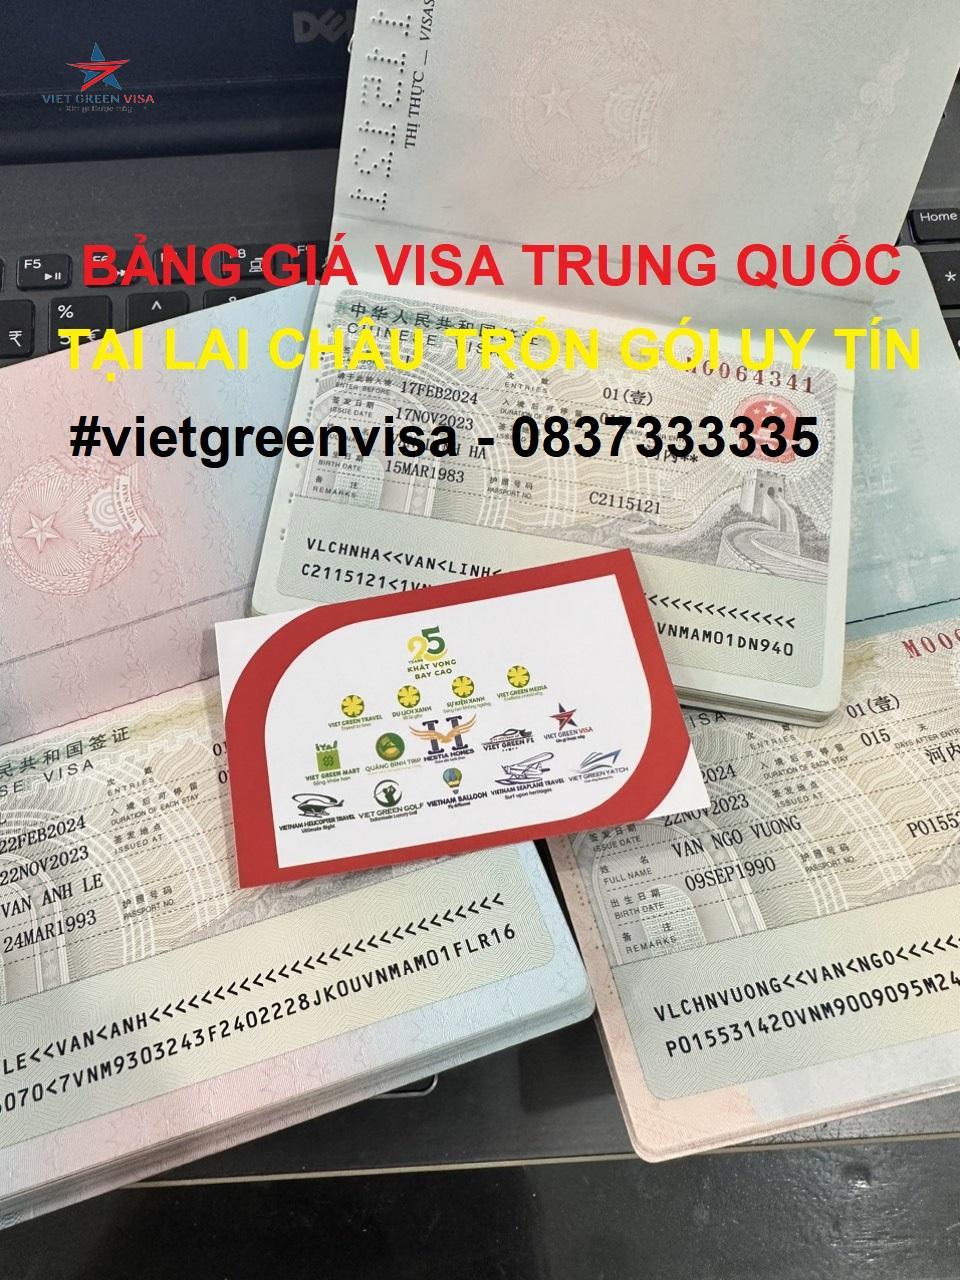 Dịch vụ xin visa Trung Quốc tại Lai Châu trọn gói